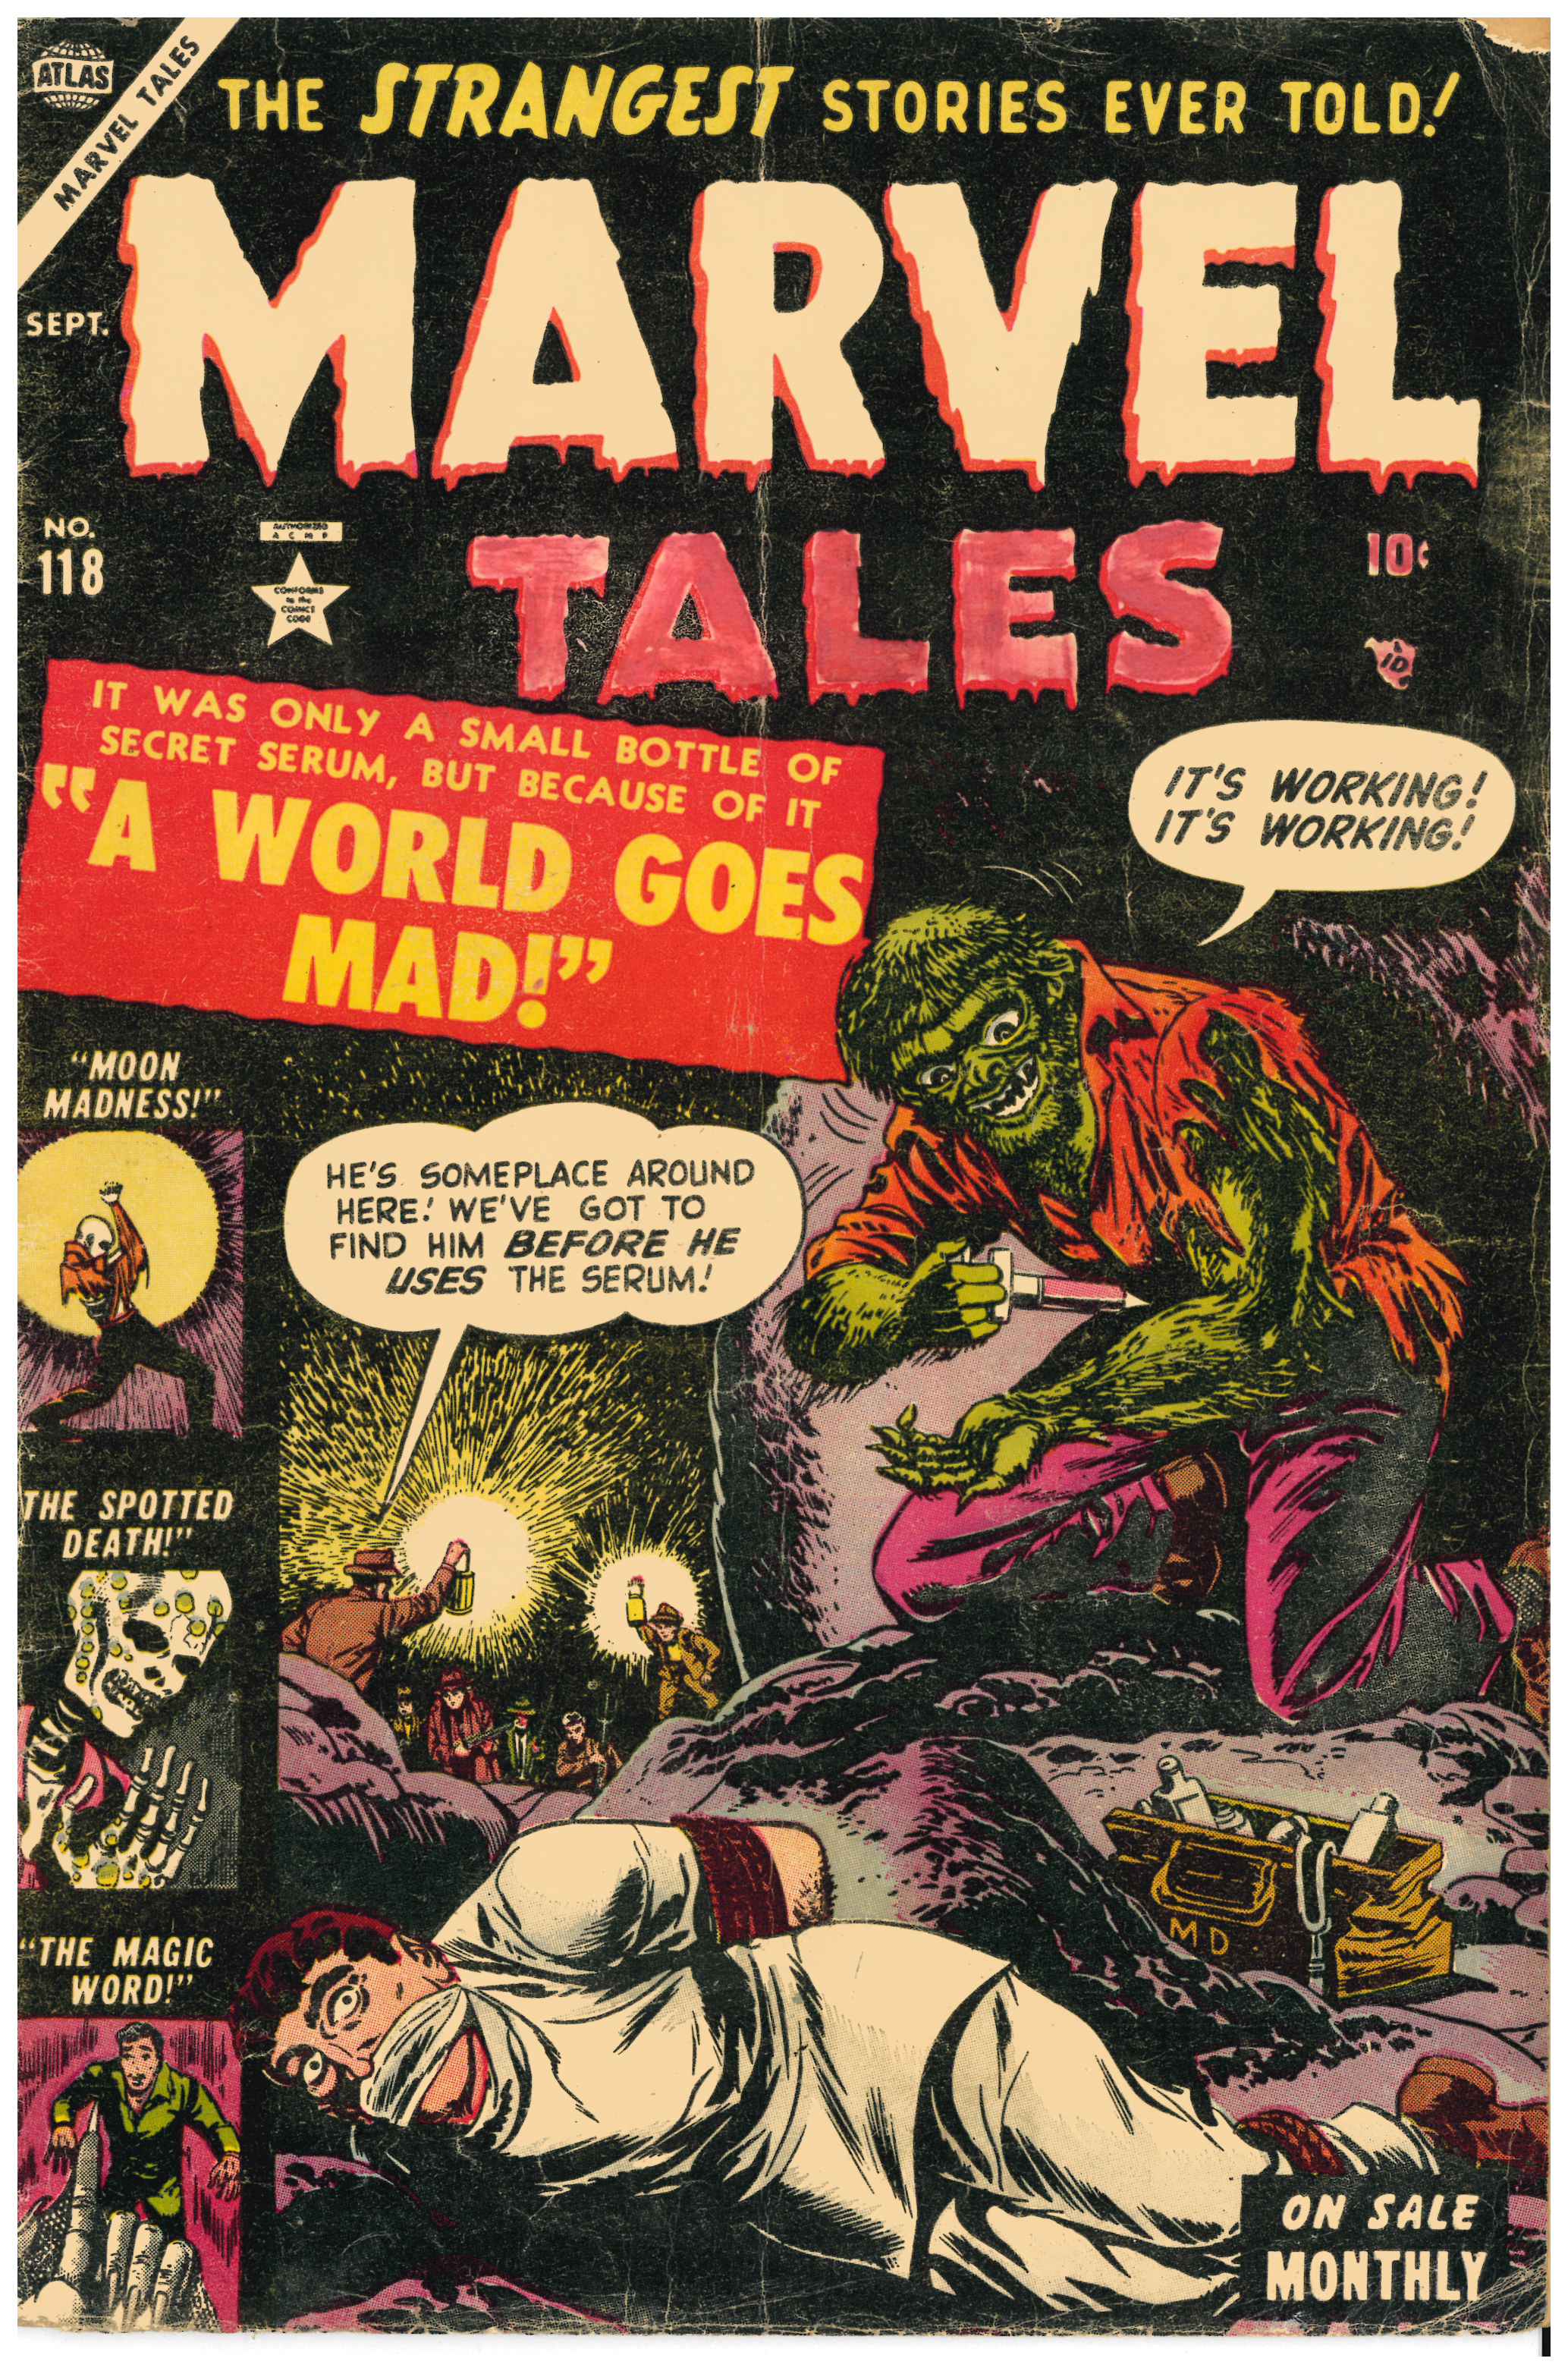 Marvel Tales #118